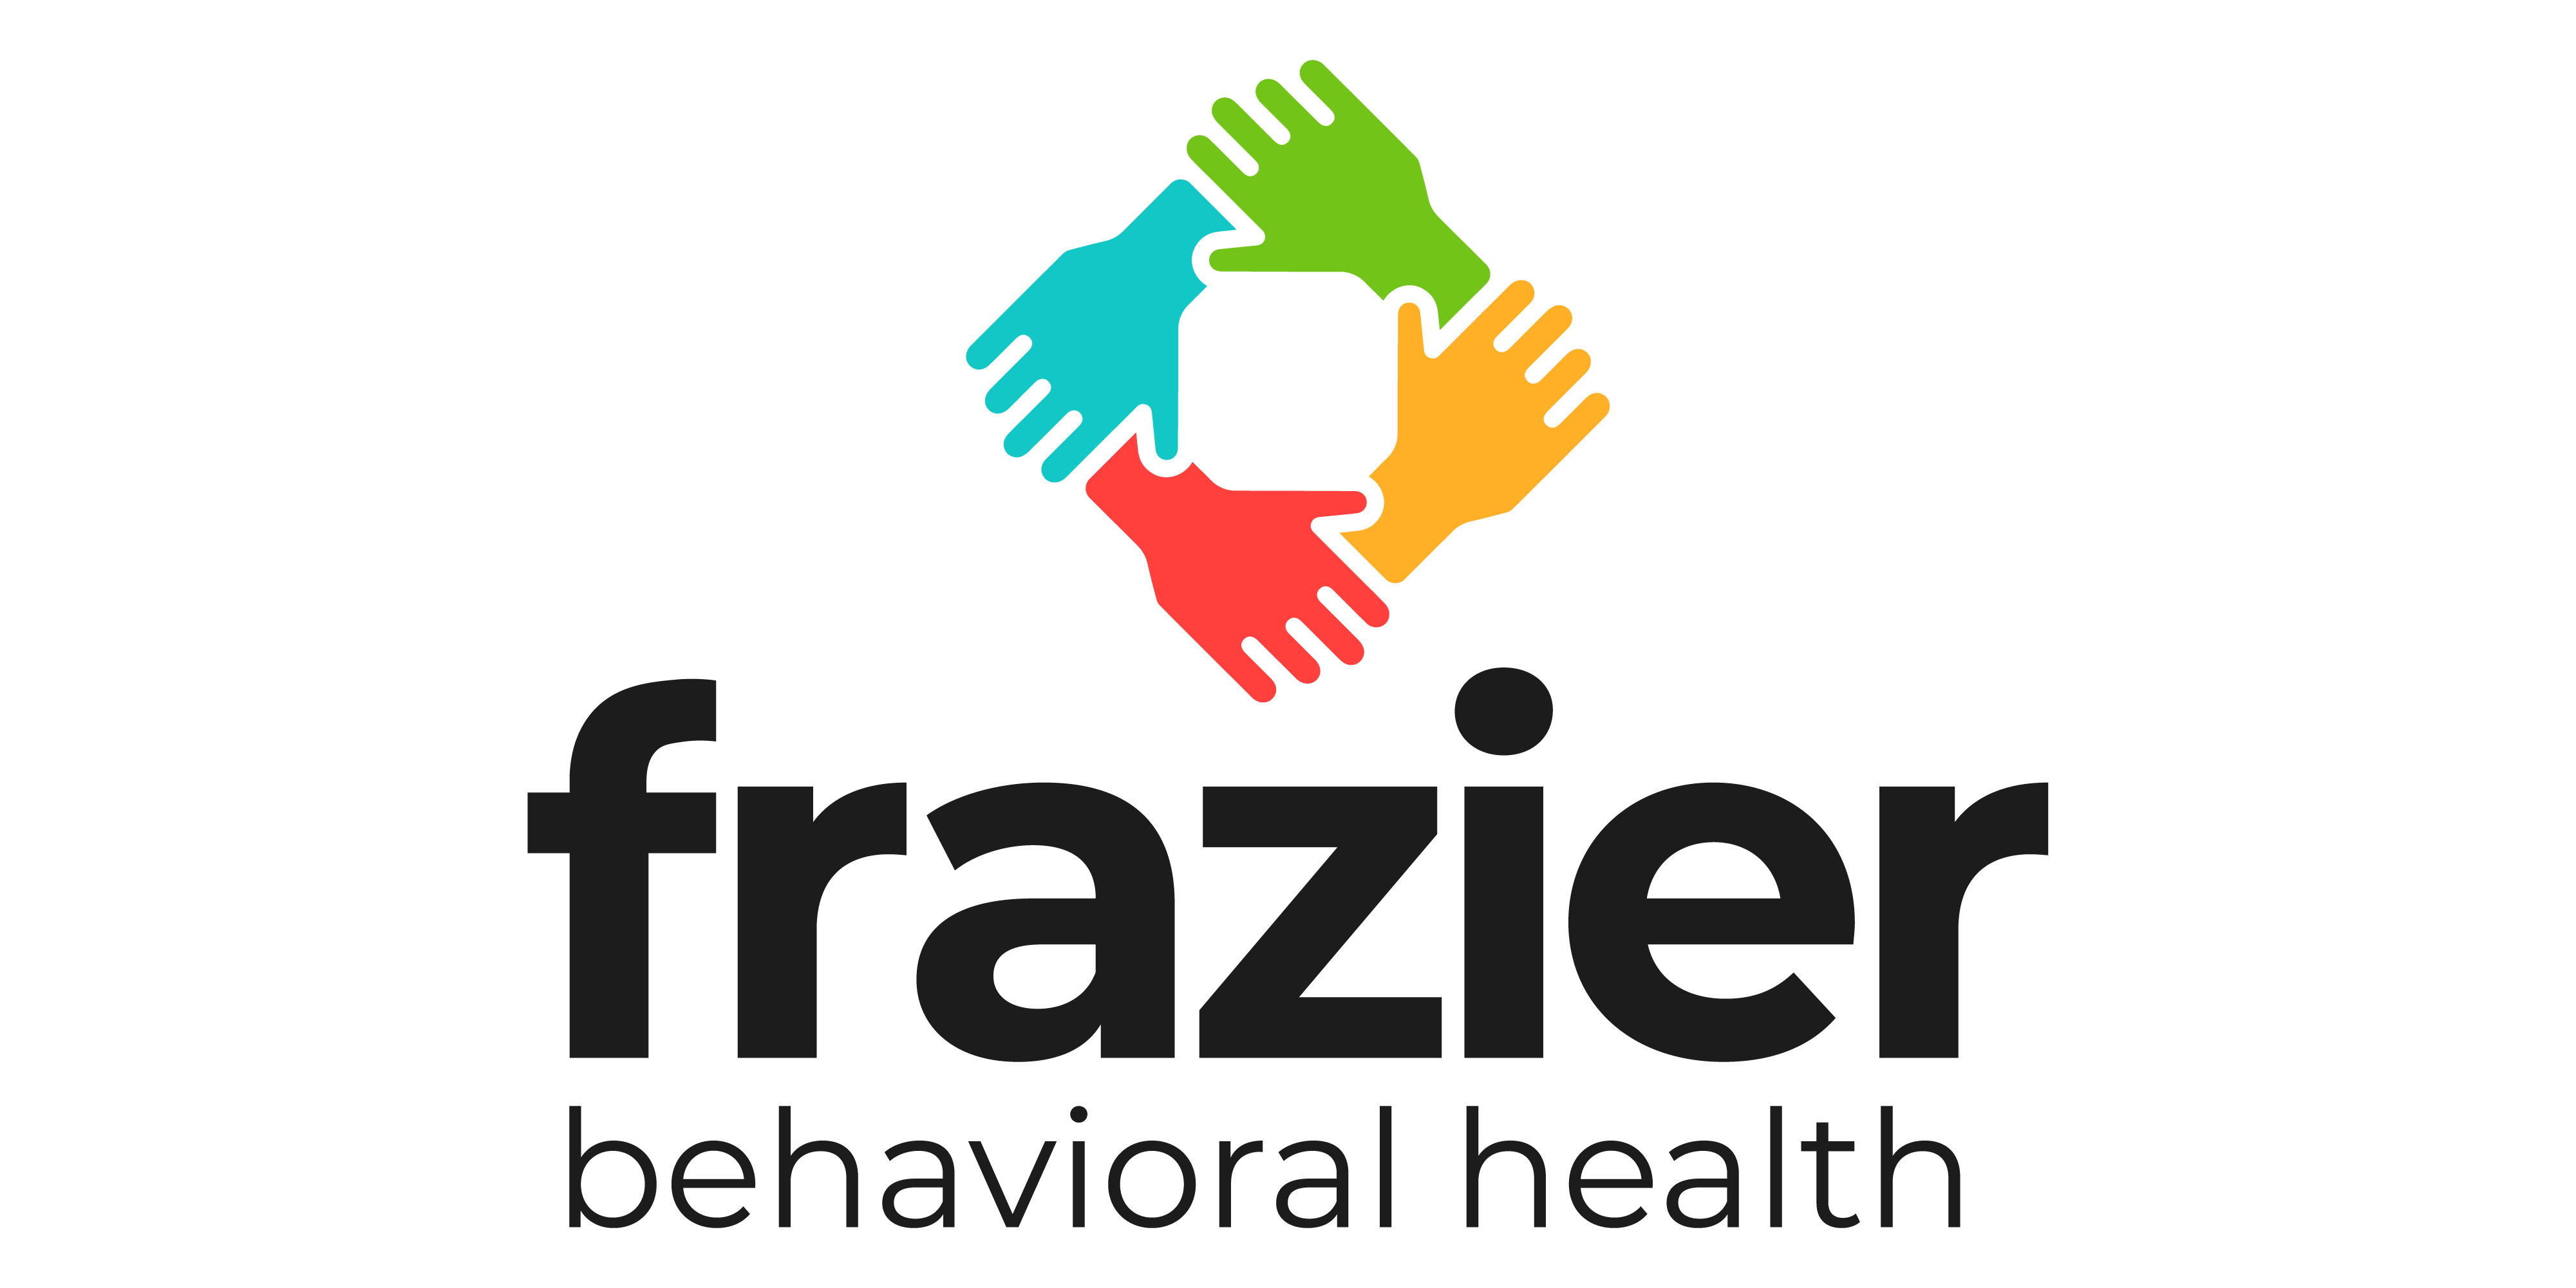 002 Frazier Behavioral Health